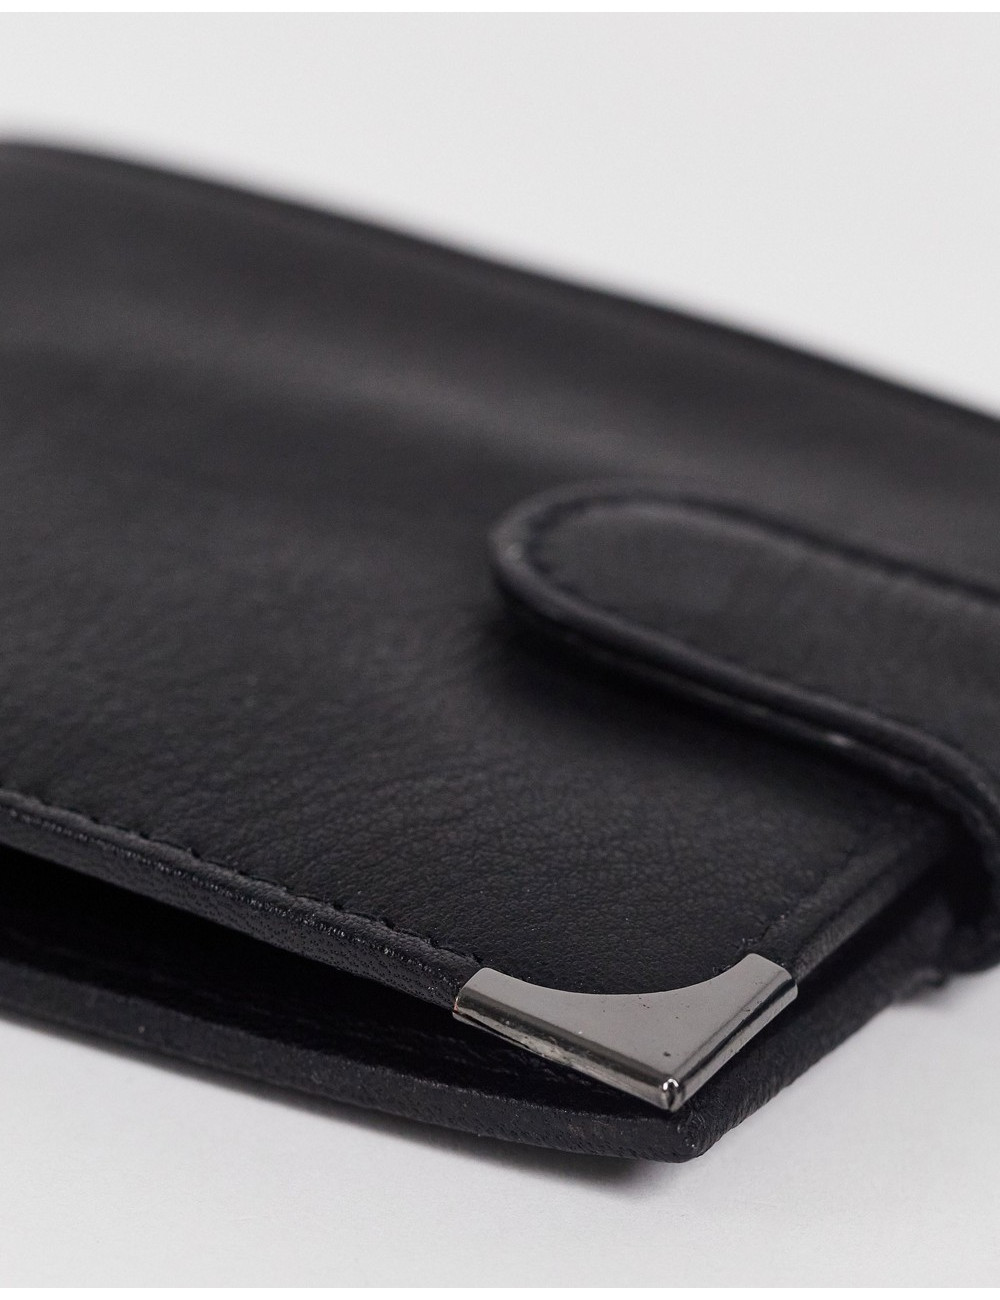 Farah bifold wallet in black